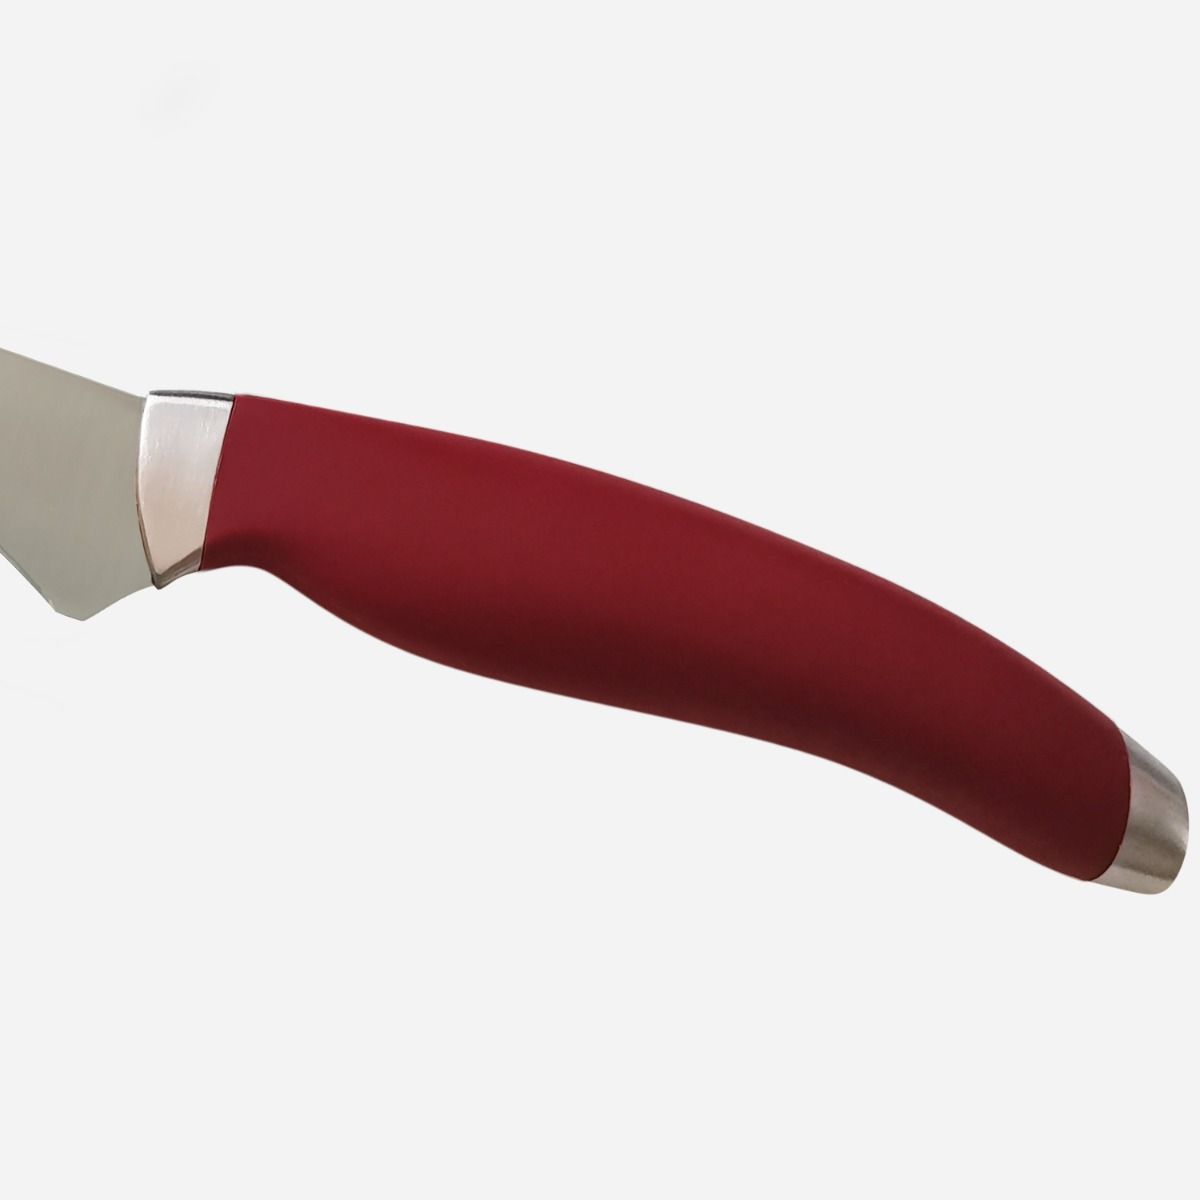 Boning Knife16 cm  Stainless Steel Berkel Teknica Handle Red Resin